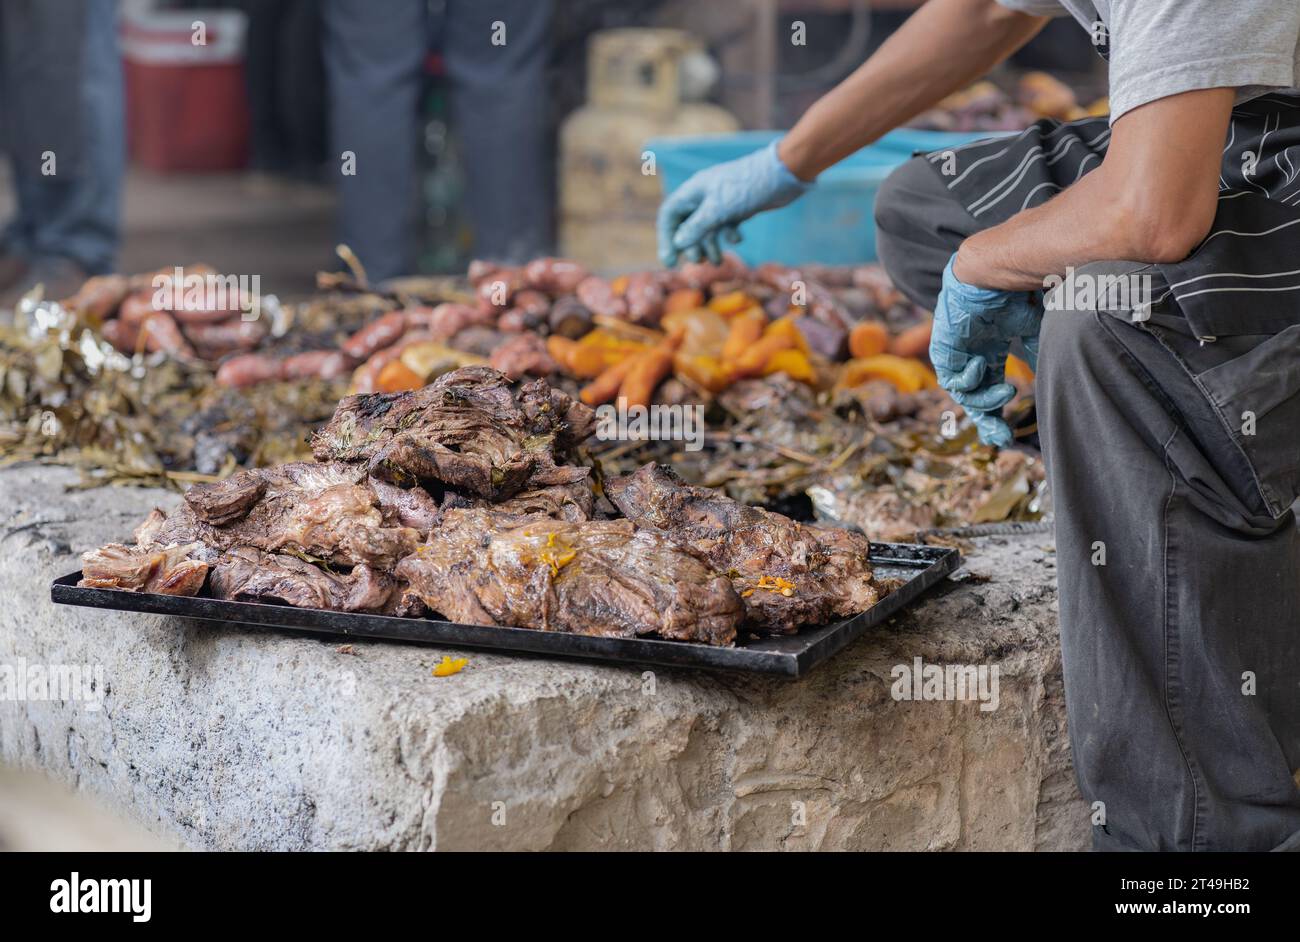 Un uomo mette da parte e mette su un vassoio la carne preparata sottoterra come parte della cerimonia del curanto, un cibo tradizionale della Patagonia.Colonia Suiza, Foto Stock